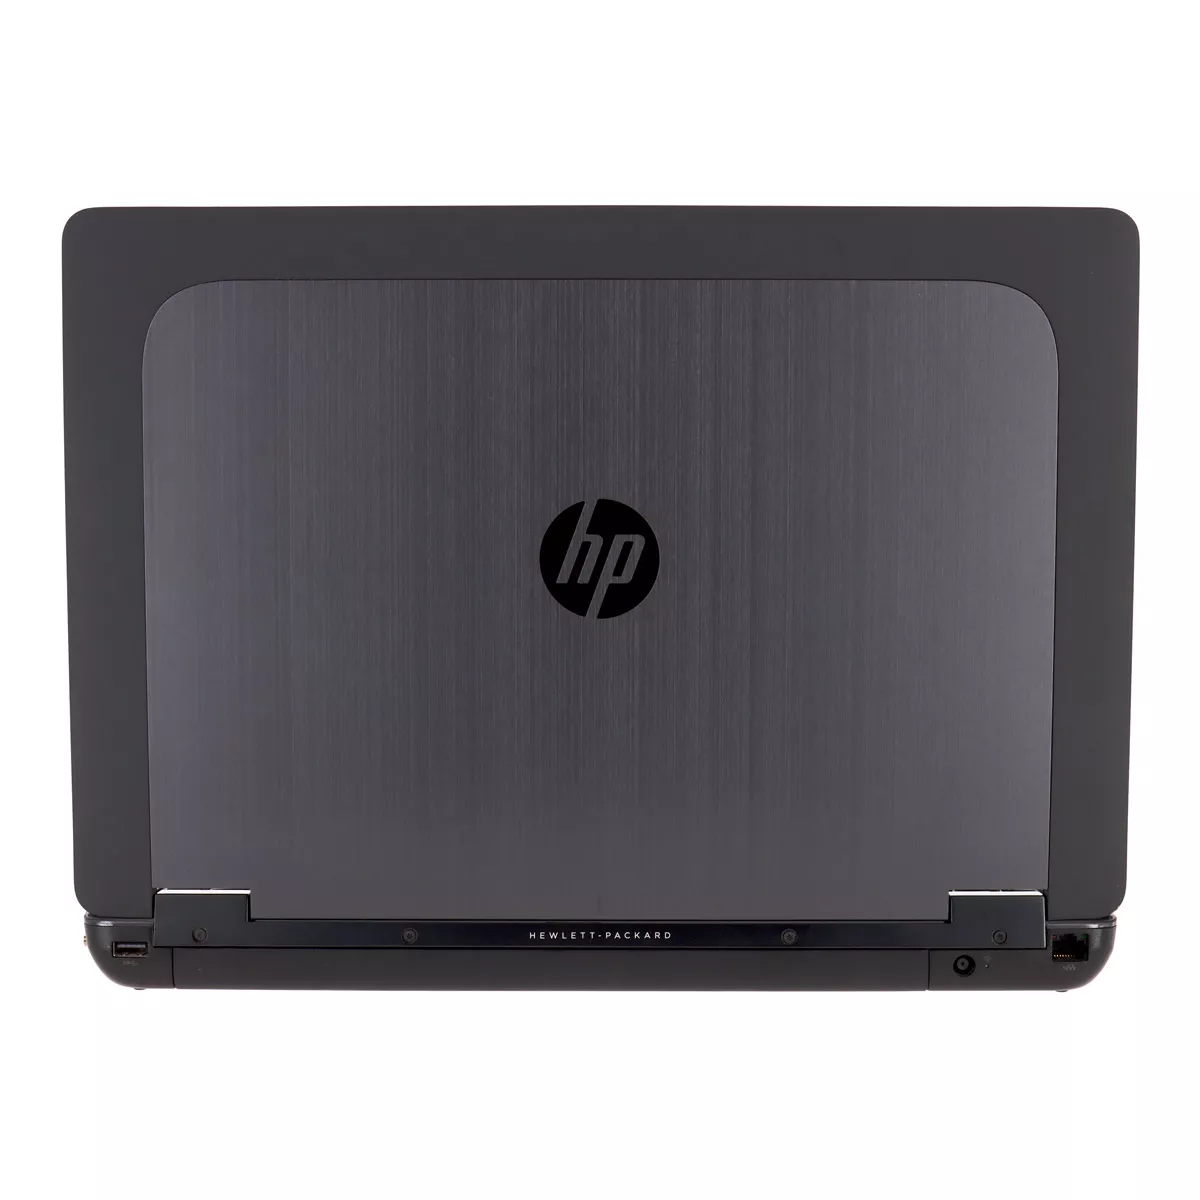 HP ZBook 15 Core i7 4600M nVidia Quadro K610M Full-HD Webcam A